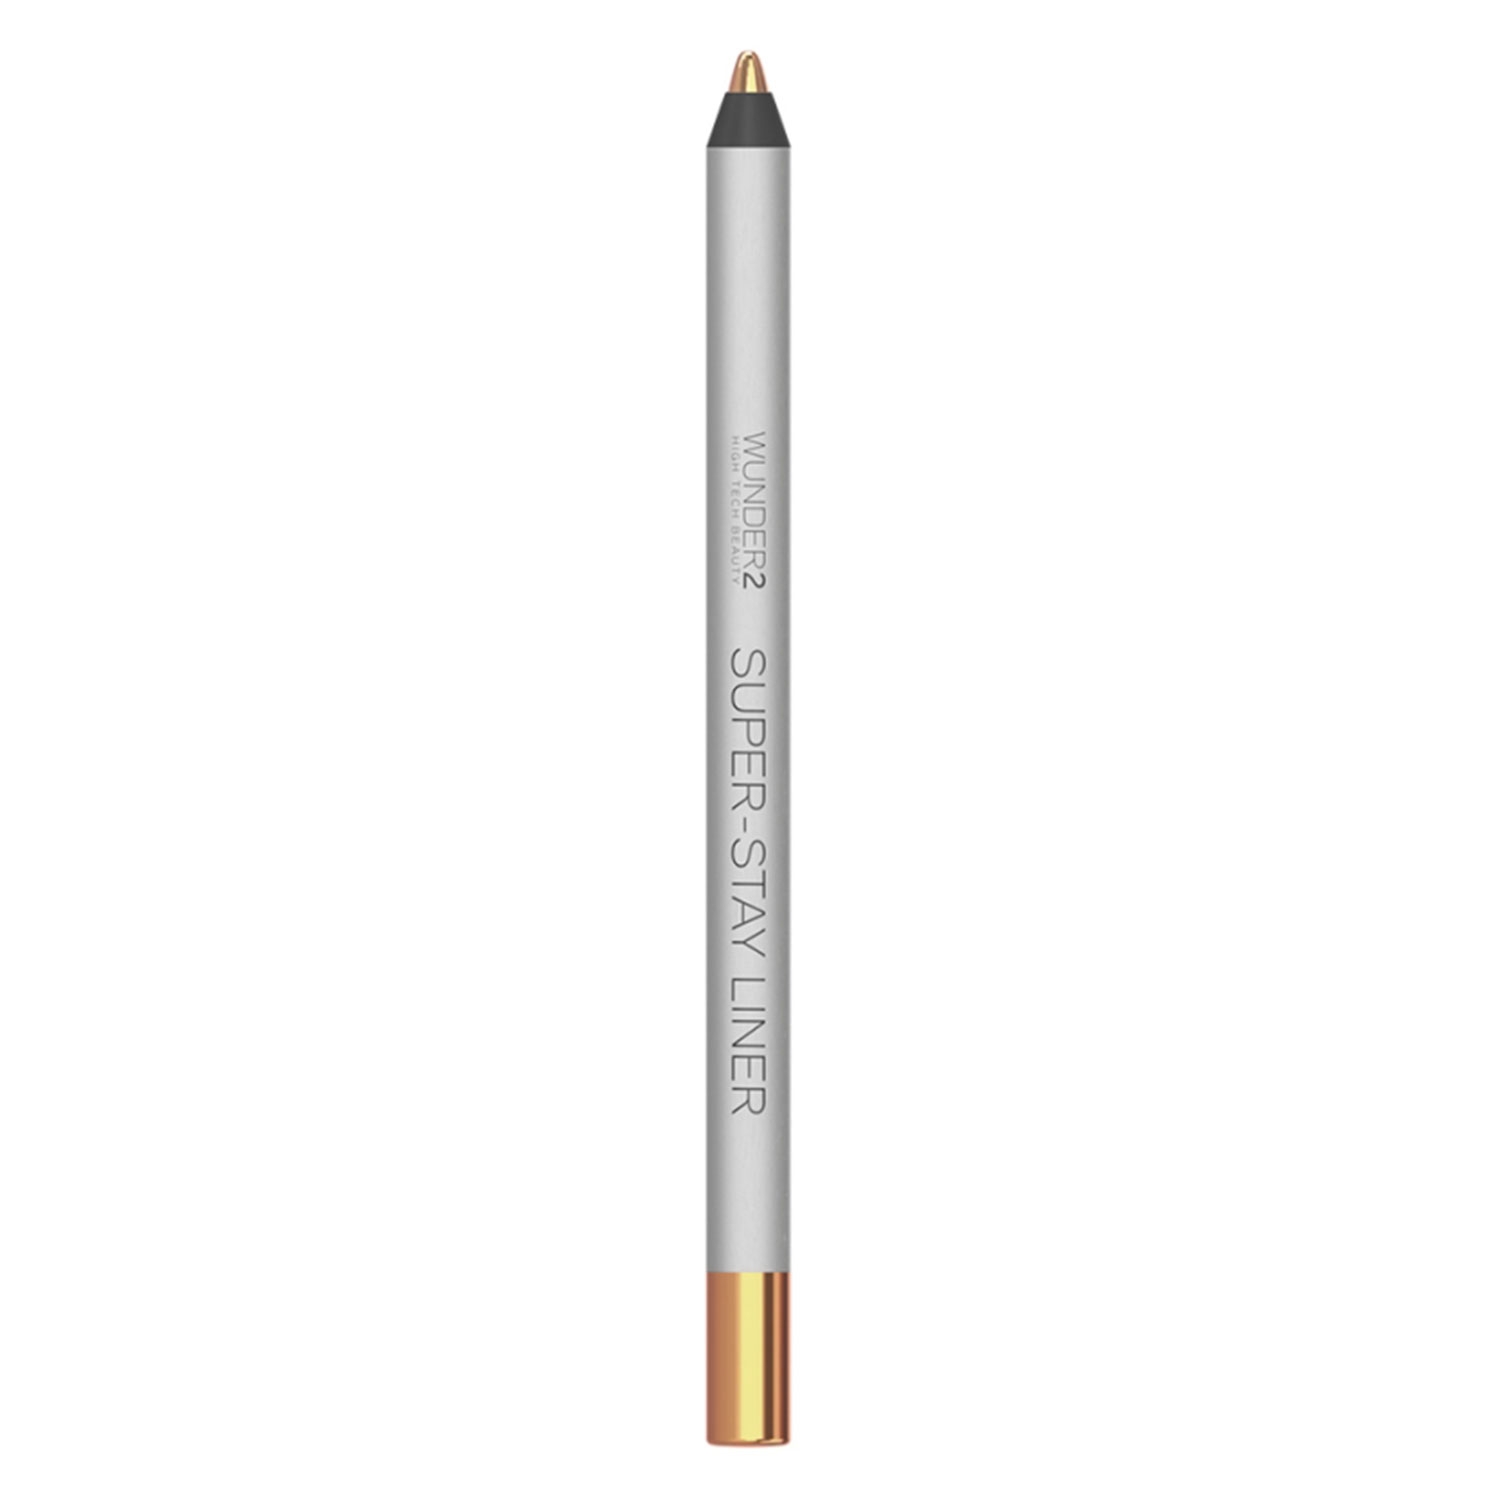 Produktbild von SUPER-STAY - Eye Pencil Metallic Copper